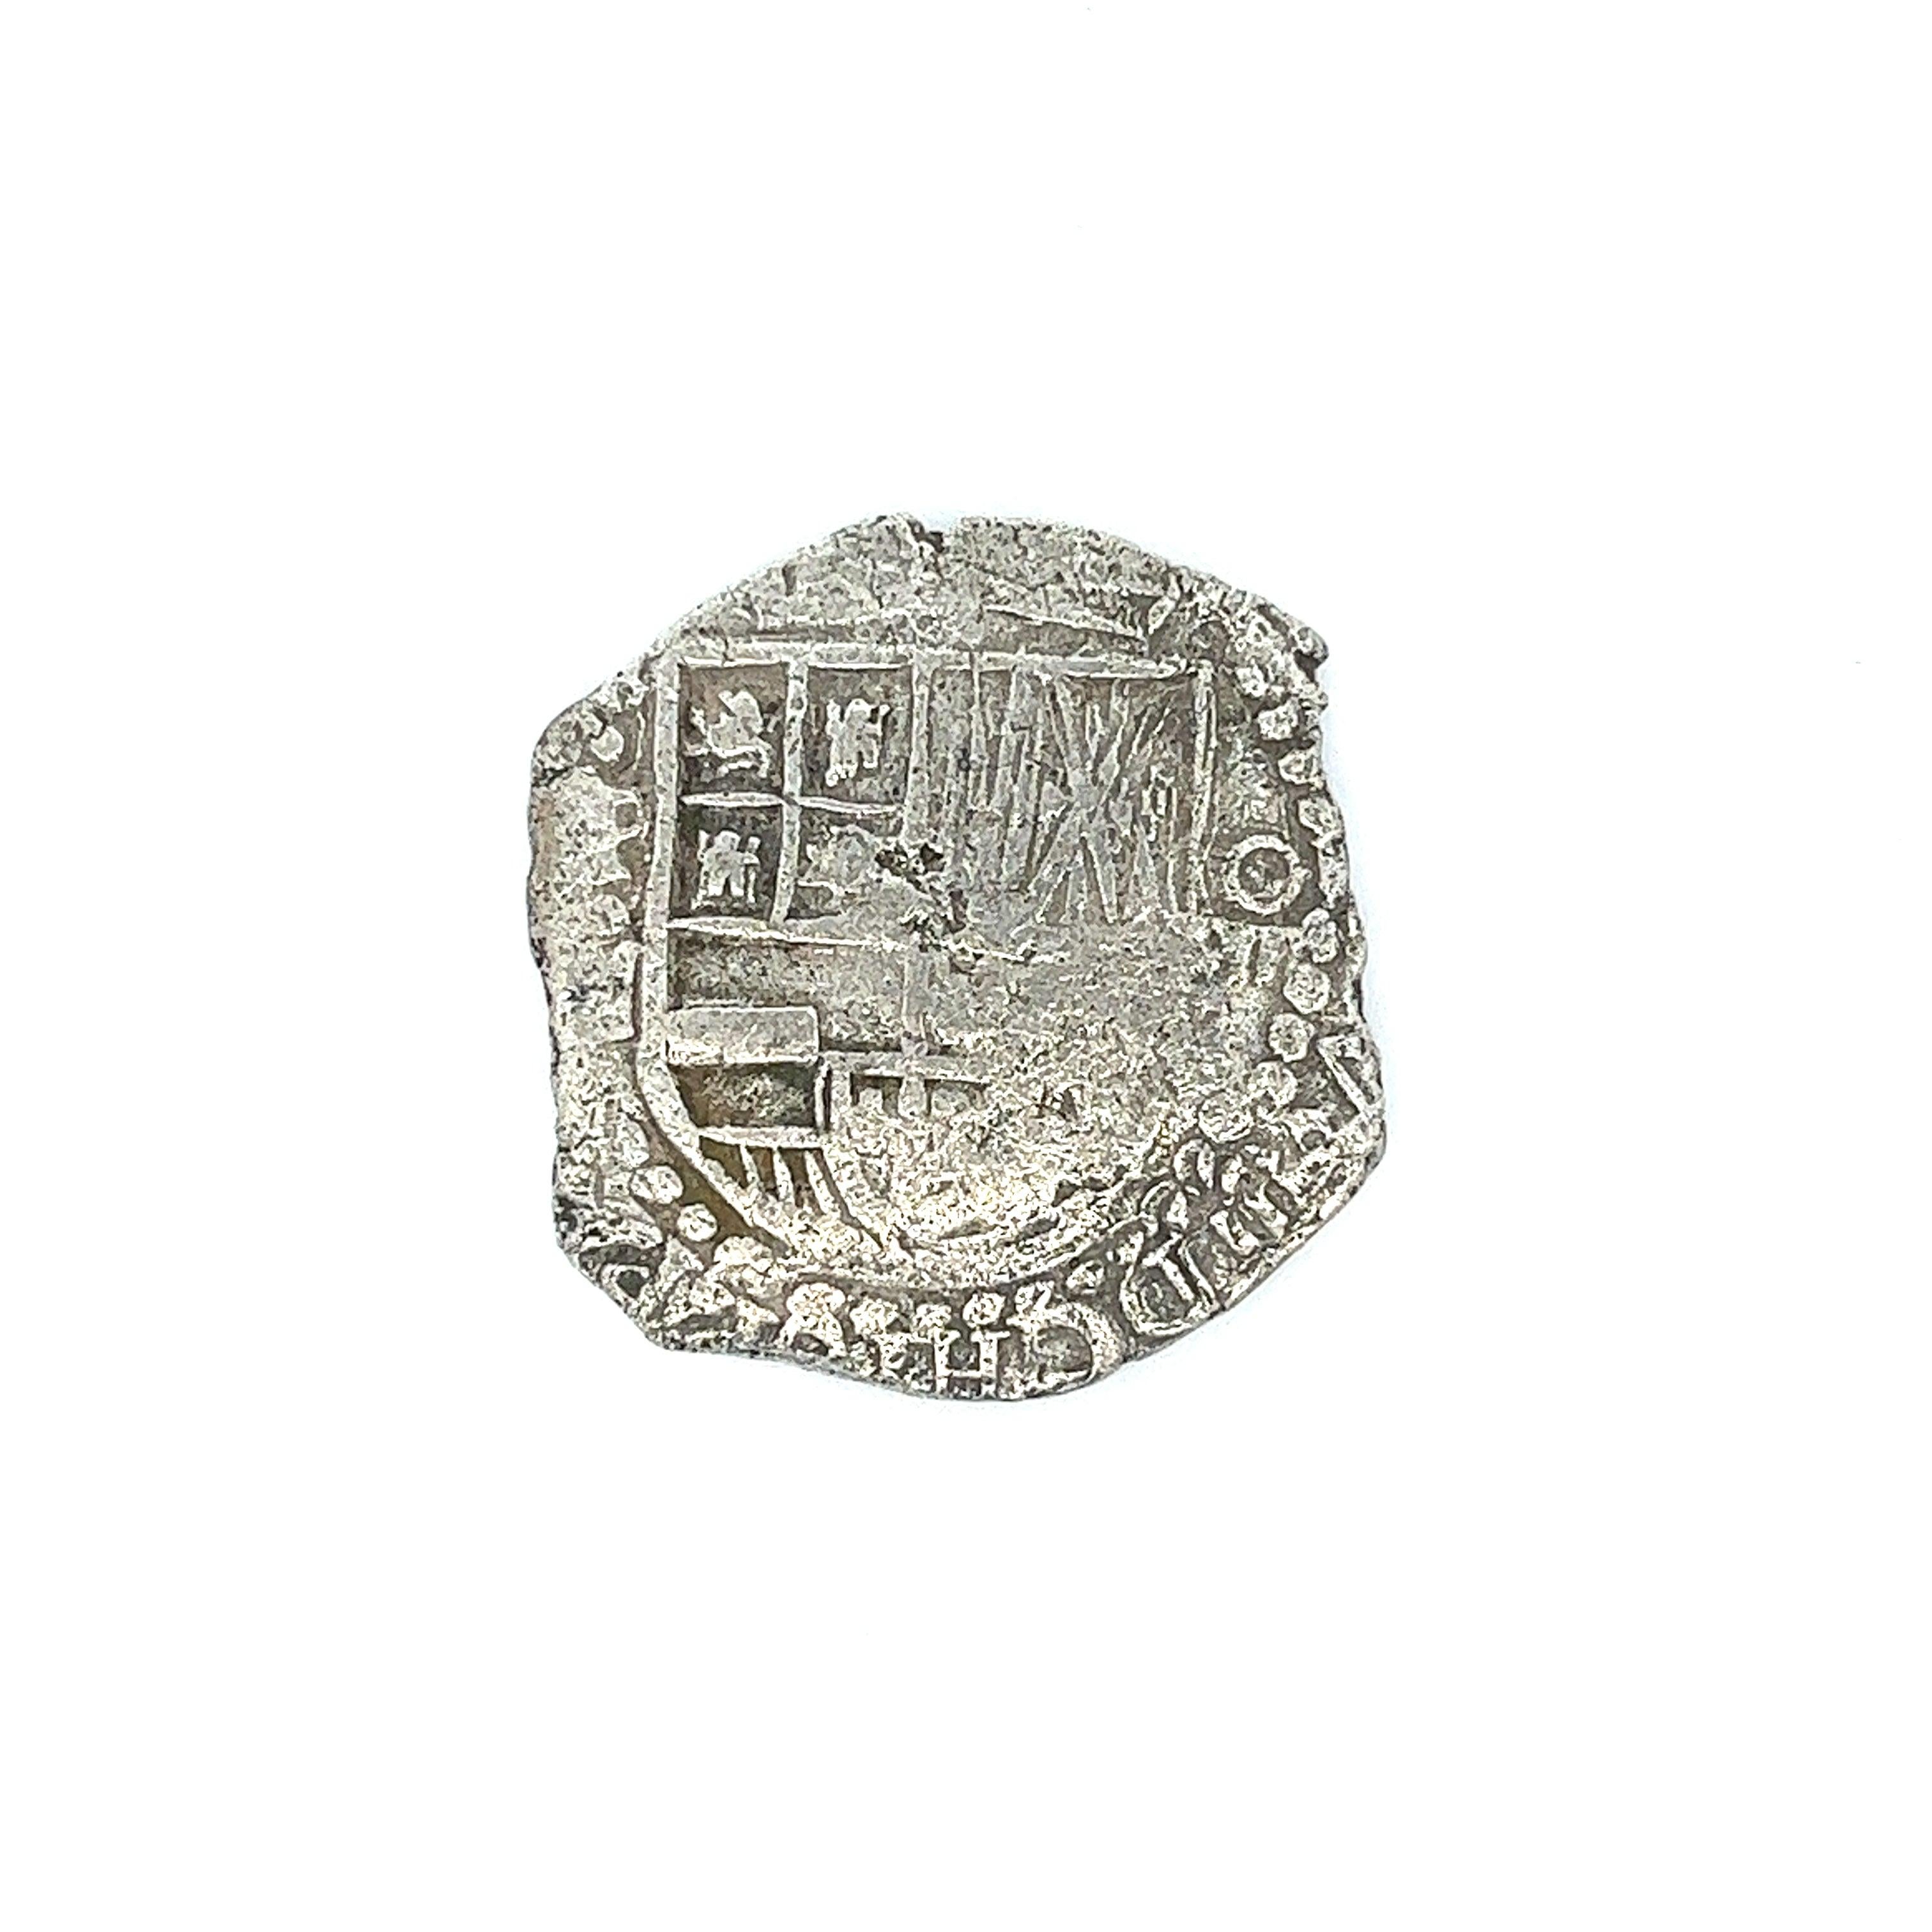 Original Atocha Shipwreck Münze unmontiert komplett mit dem Original-Zertifikat von Treasure Salvors INC. Signiert von Mel Fisher. 

Stufe 1 bedeutet, dass die Münze fast in der Mitte des Trümmerhaufens mit minimaler Korrosion geborgen wurde.

Eine